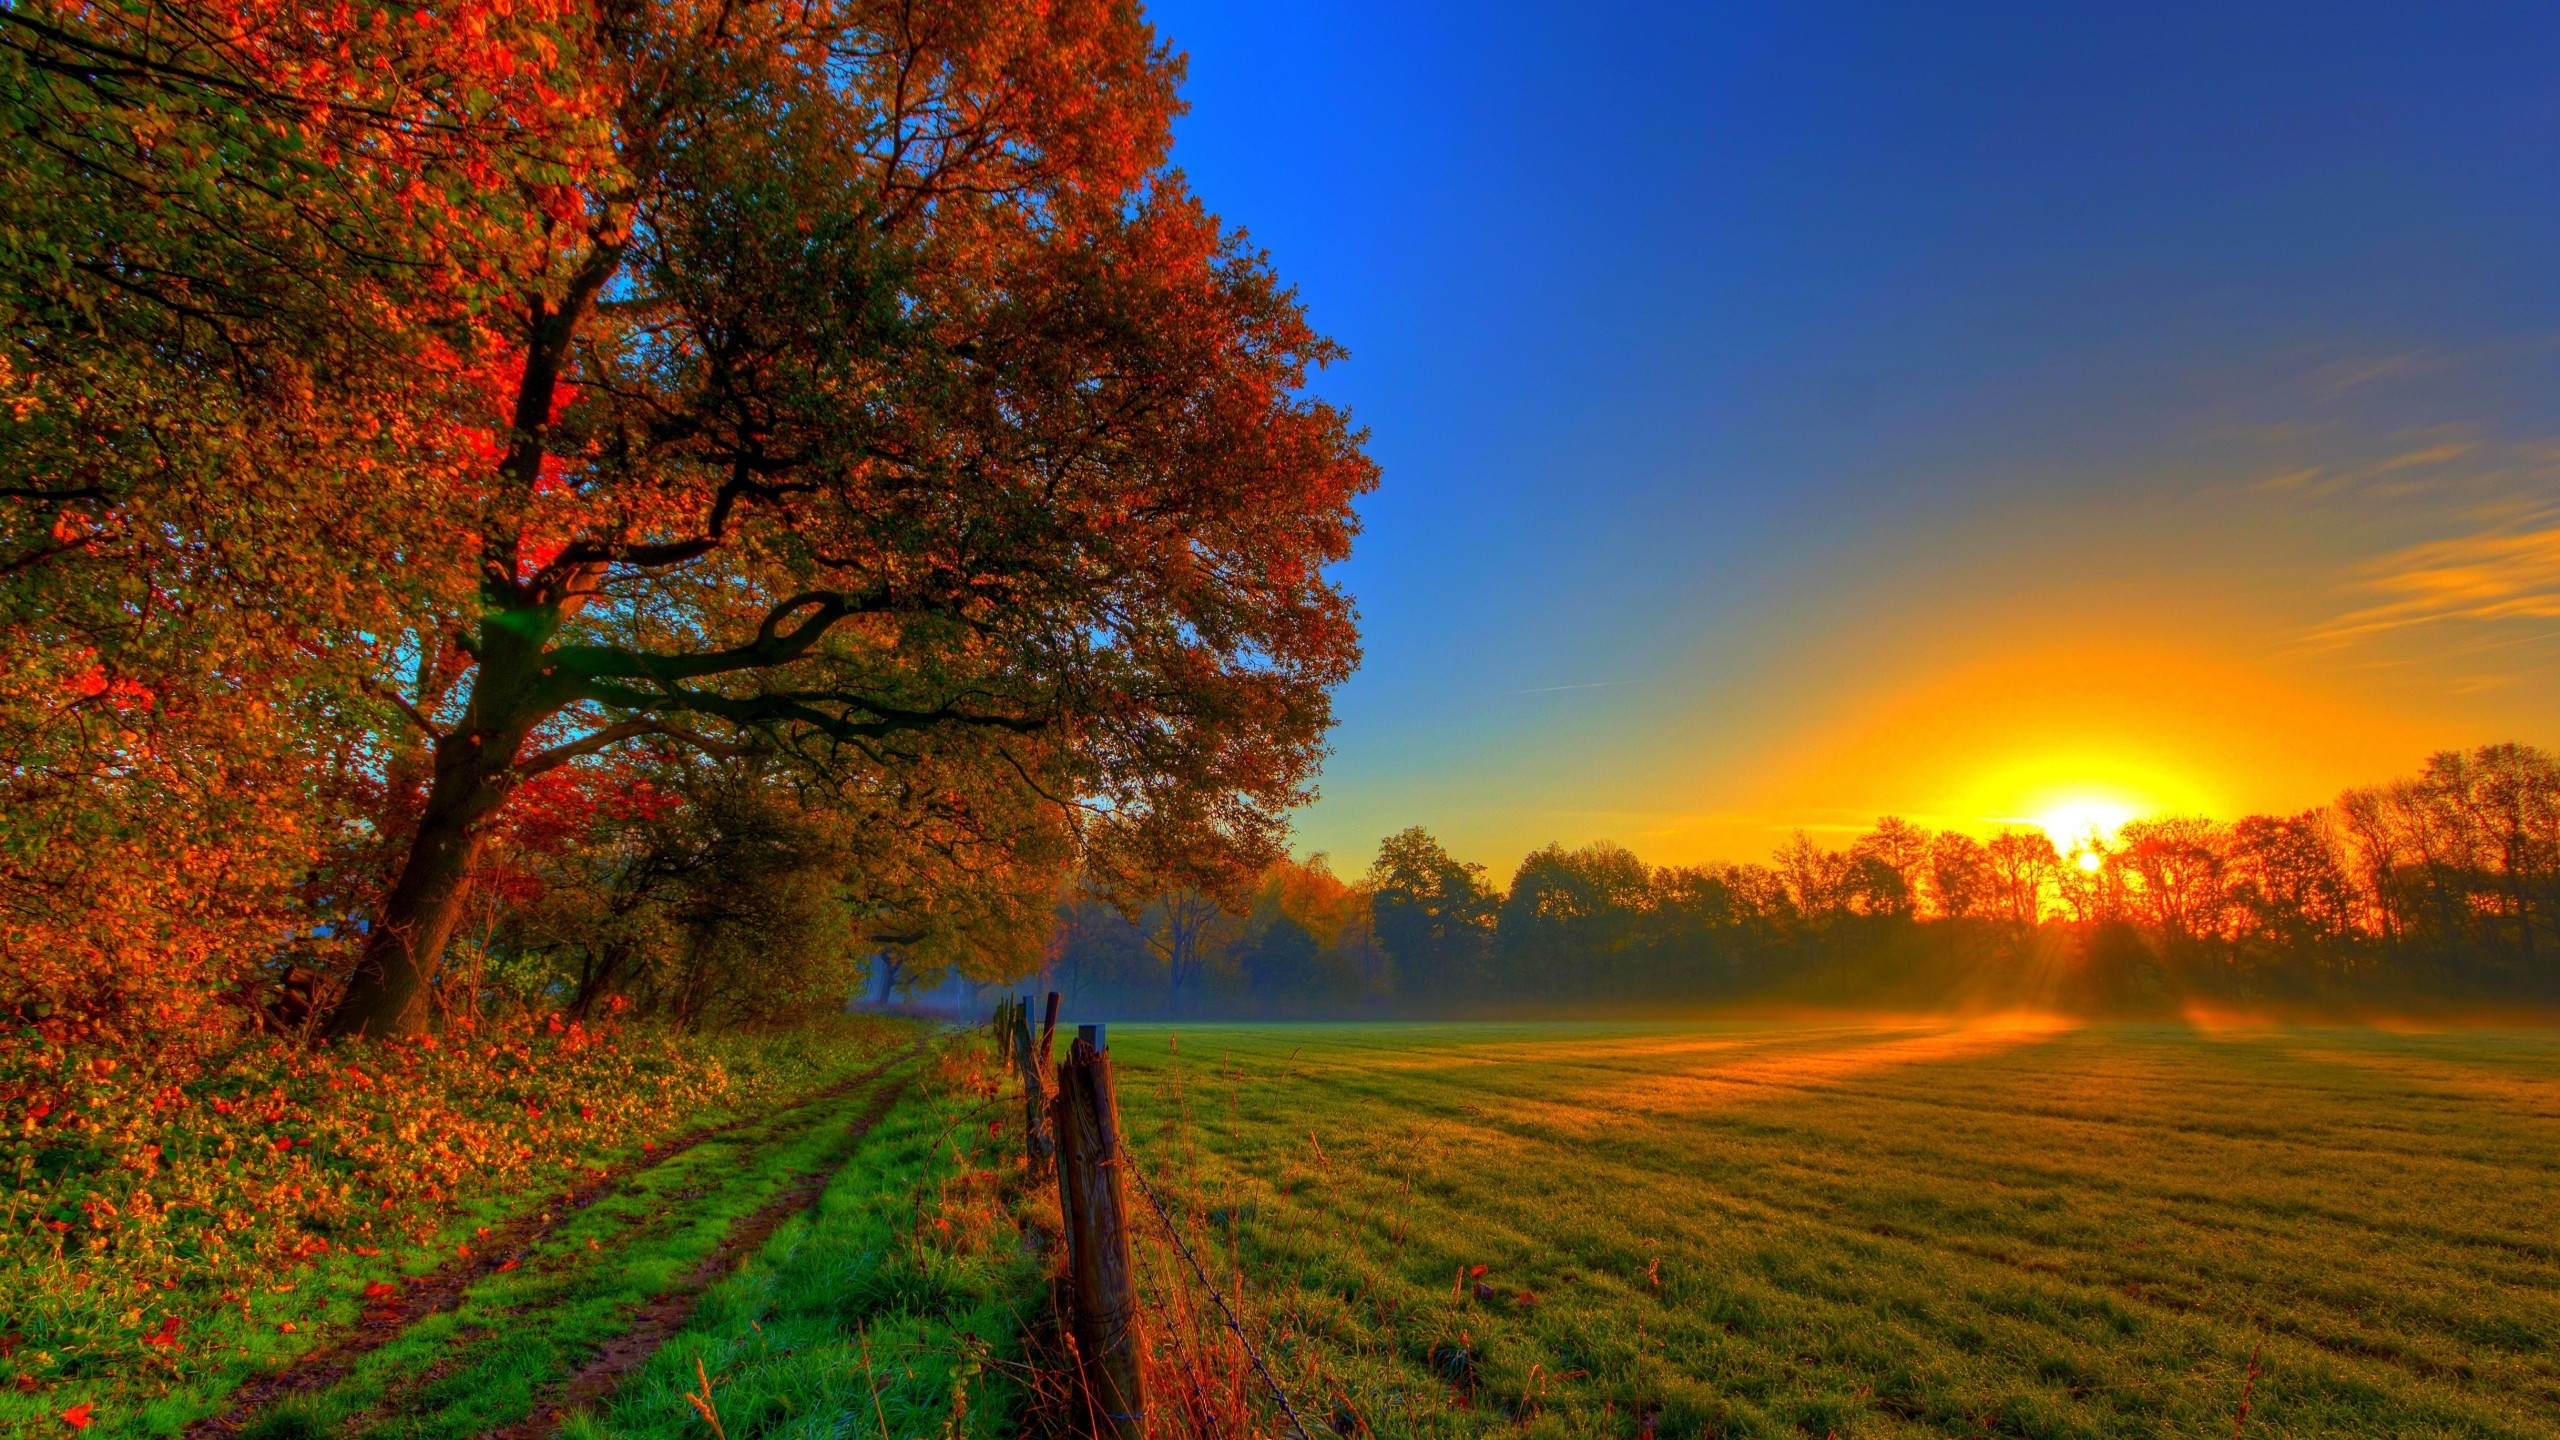 Beautiful Autumn Sunset for 2560x1440 HDTV resolution